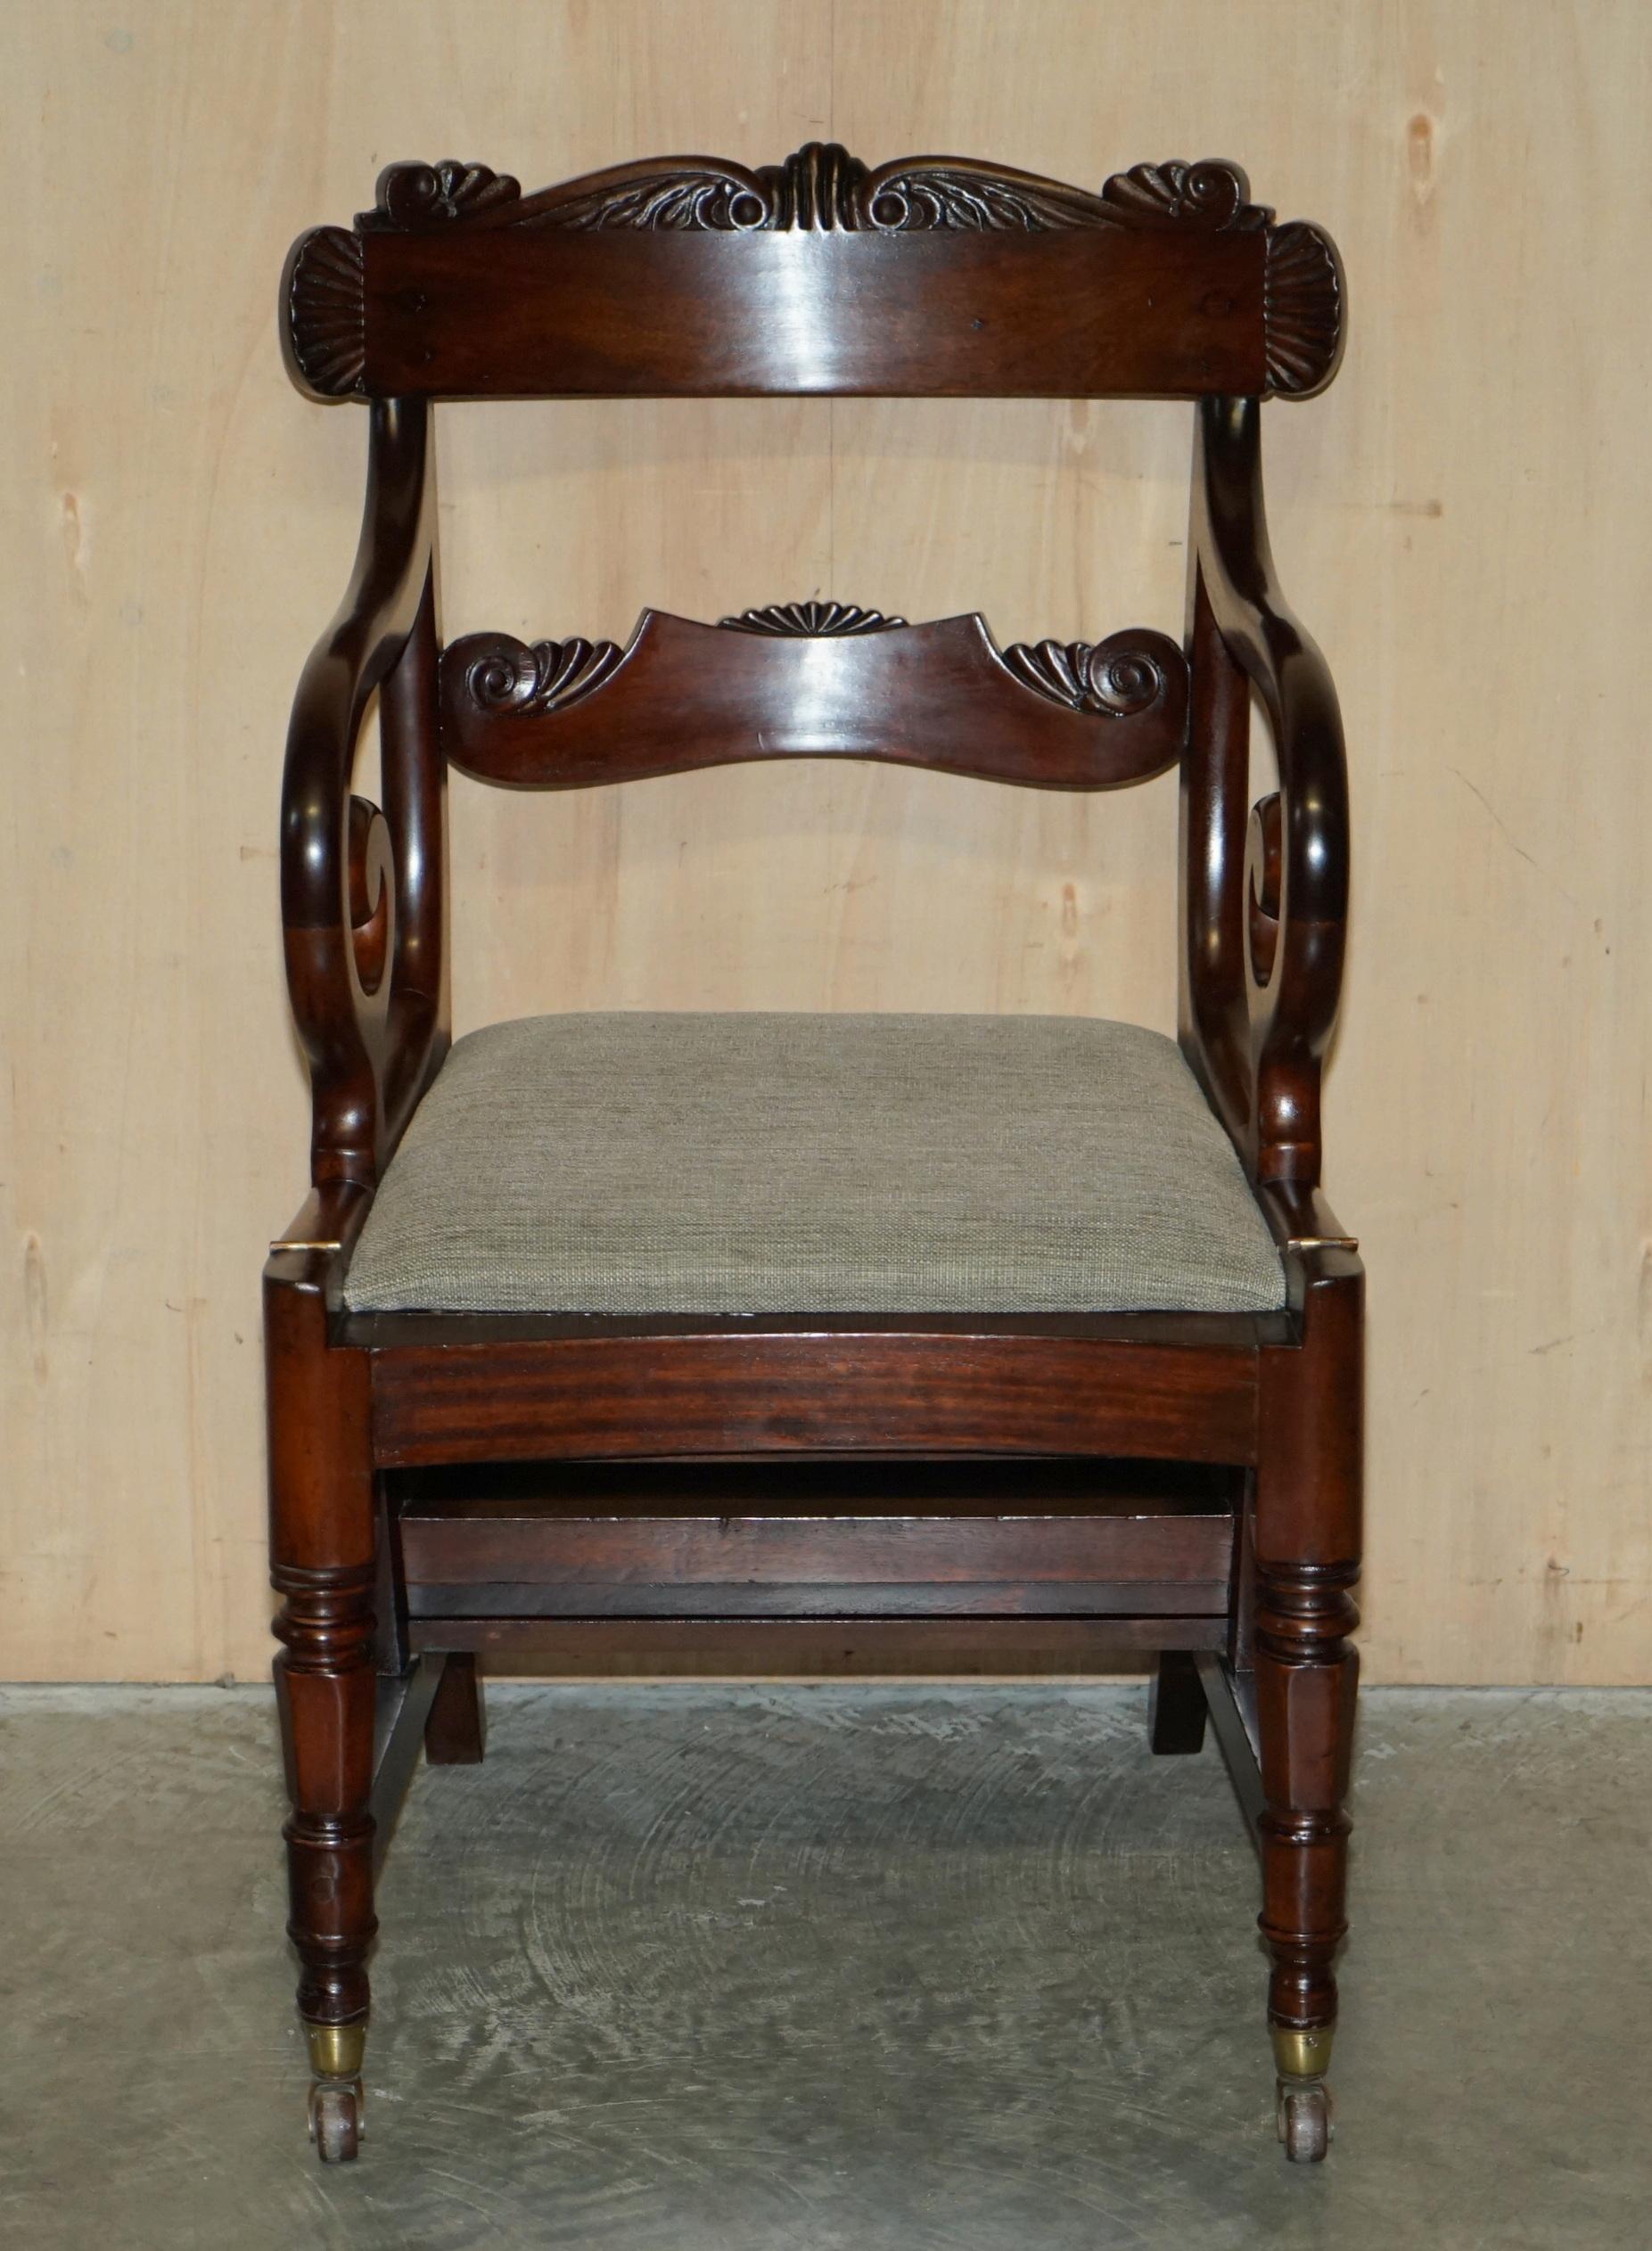 Royal House Antiques

Royal House Antiques a le plaisir d'offrir à la vente ce grand fauteuil métamorphique William IV vers 1830, légèrement restauré, en acajou flammé, qui se transforme en escalier de bibliothèque, attribué aux Gillows de Lancaster